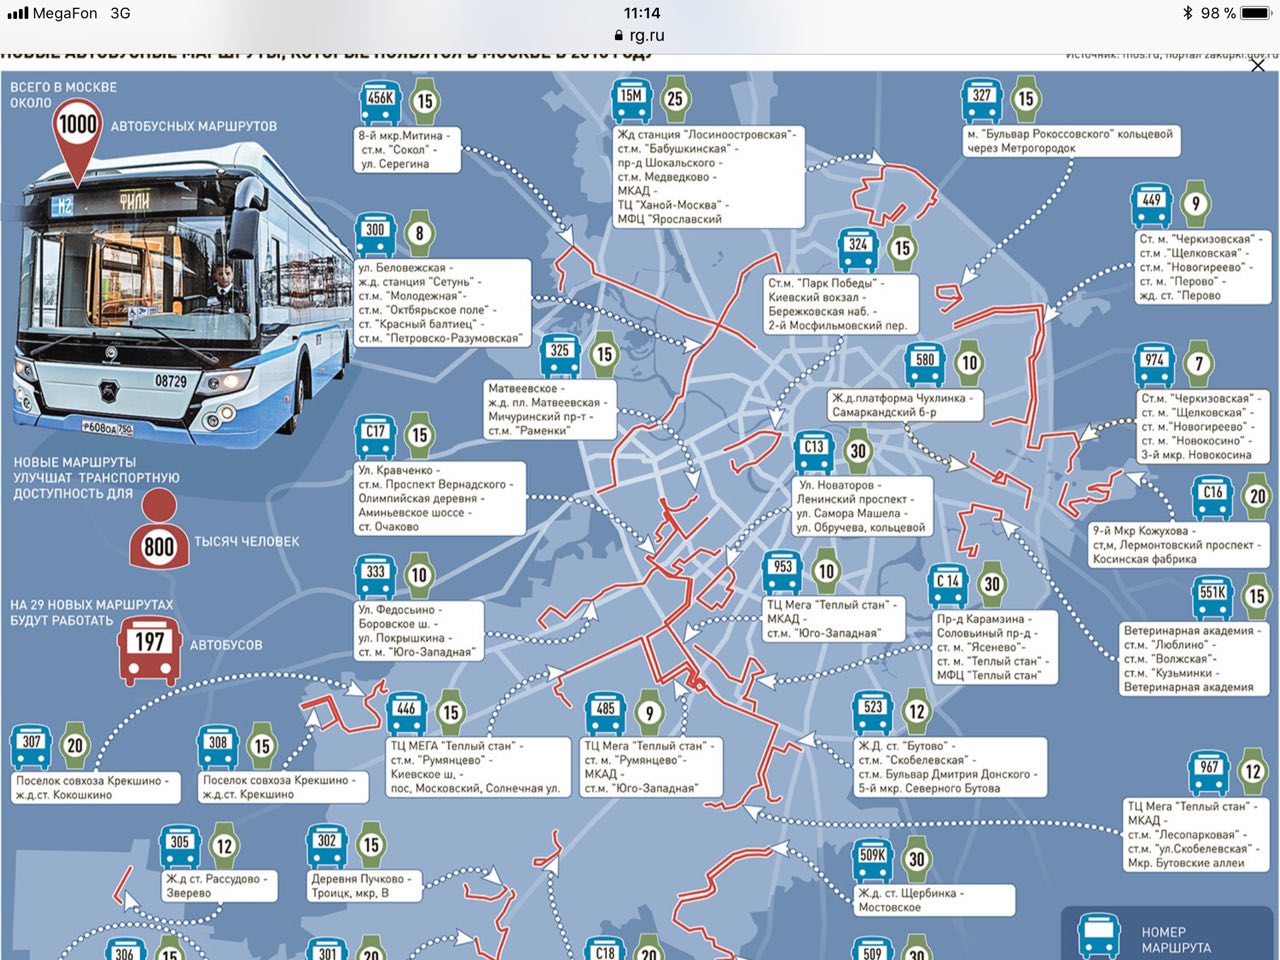 Маршрутные автобусы по городу. Карта автобусов. Схема автобусных маршрутов. Московский автобус маршруты. Схема общественного транспорта.